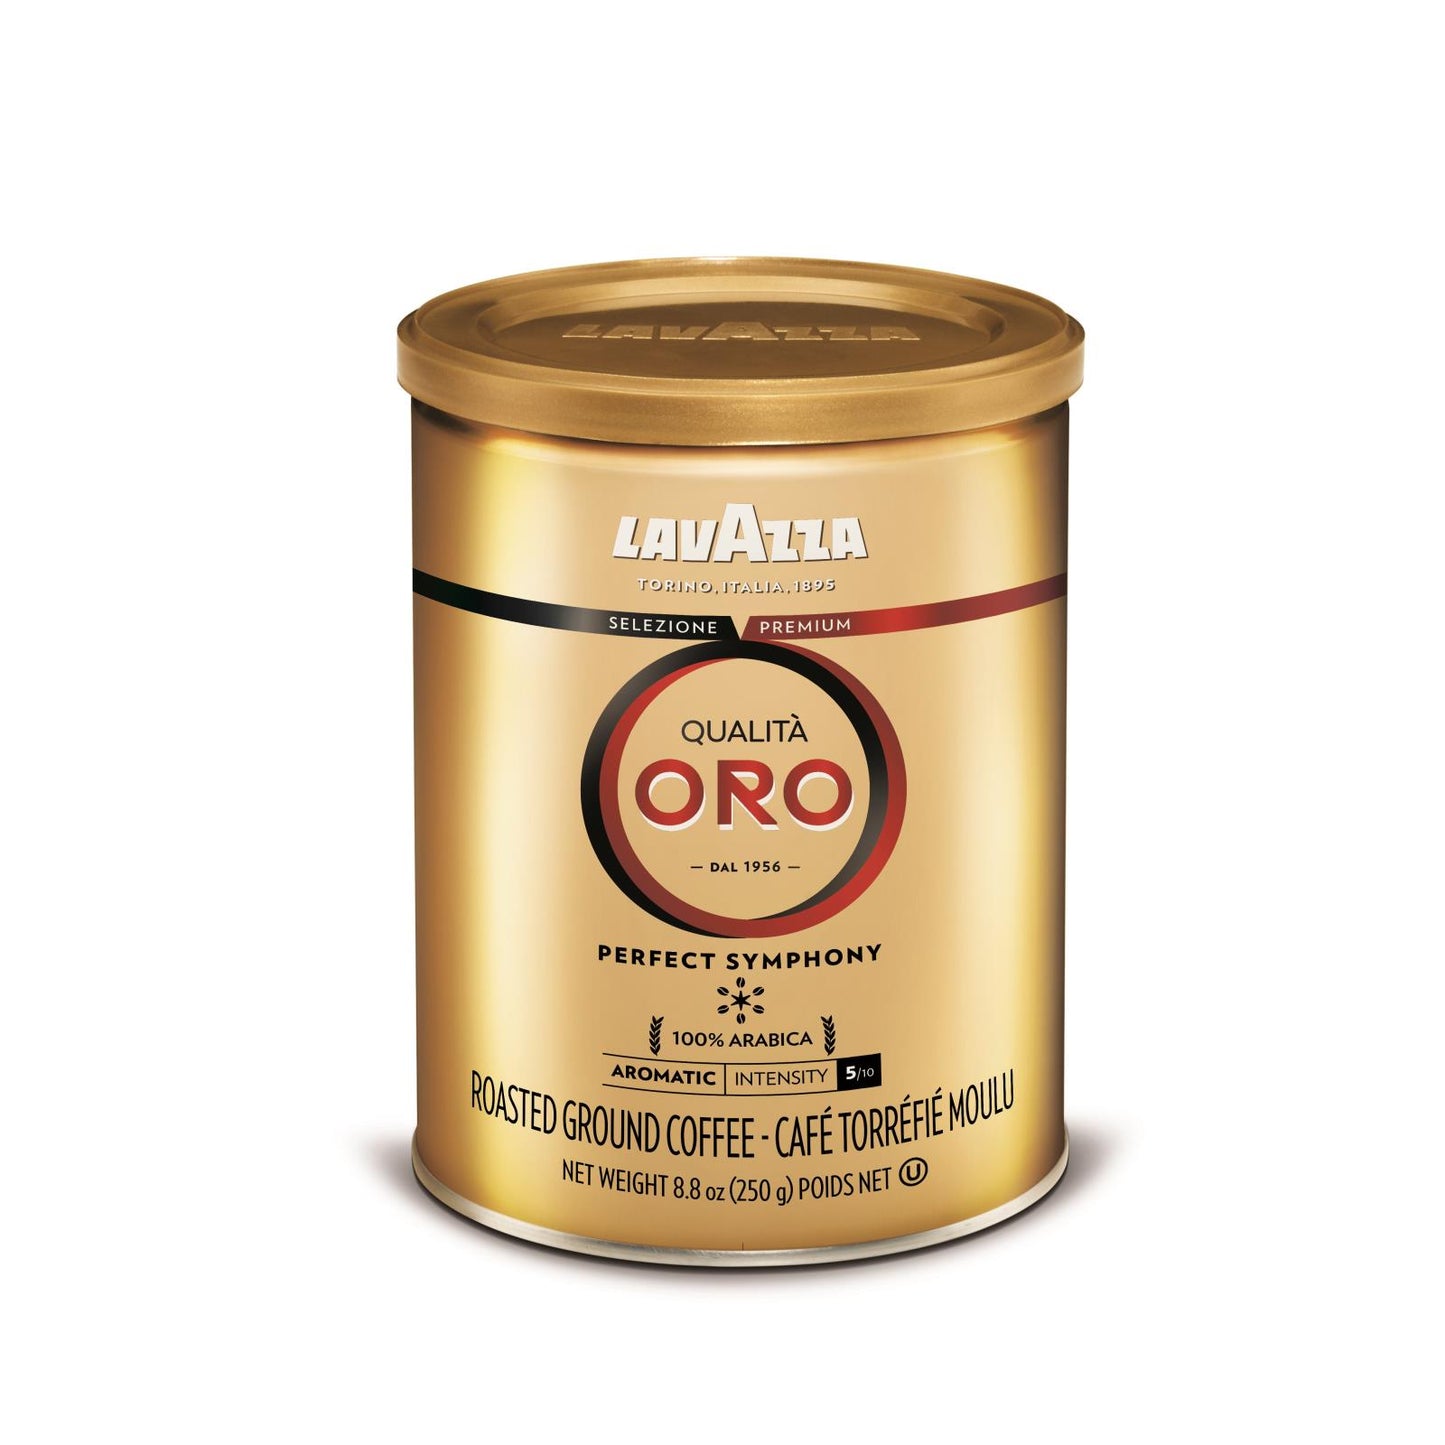 Lavazza Ground Coffee - Qualita Oro Canned - Case Of 12 - 8.8 Oz